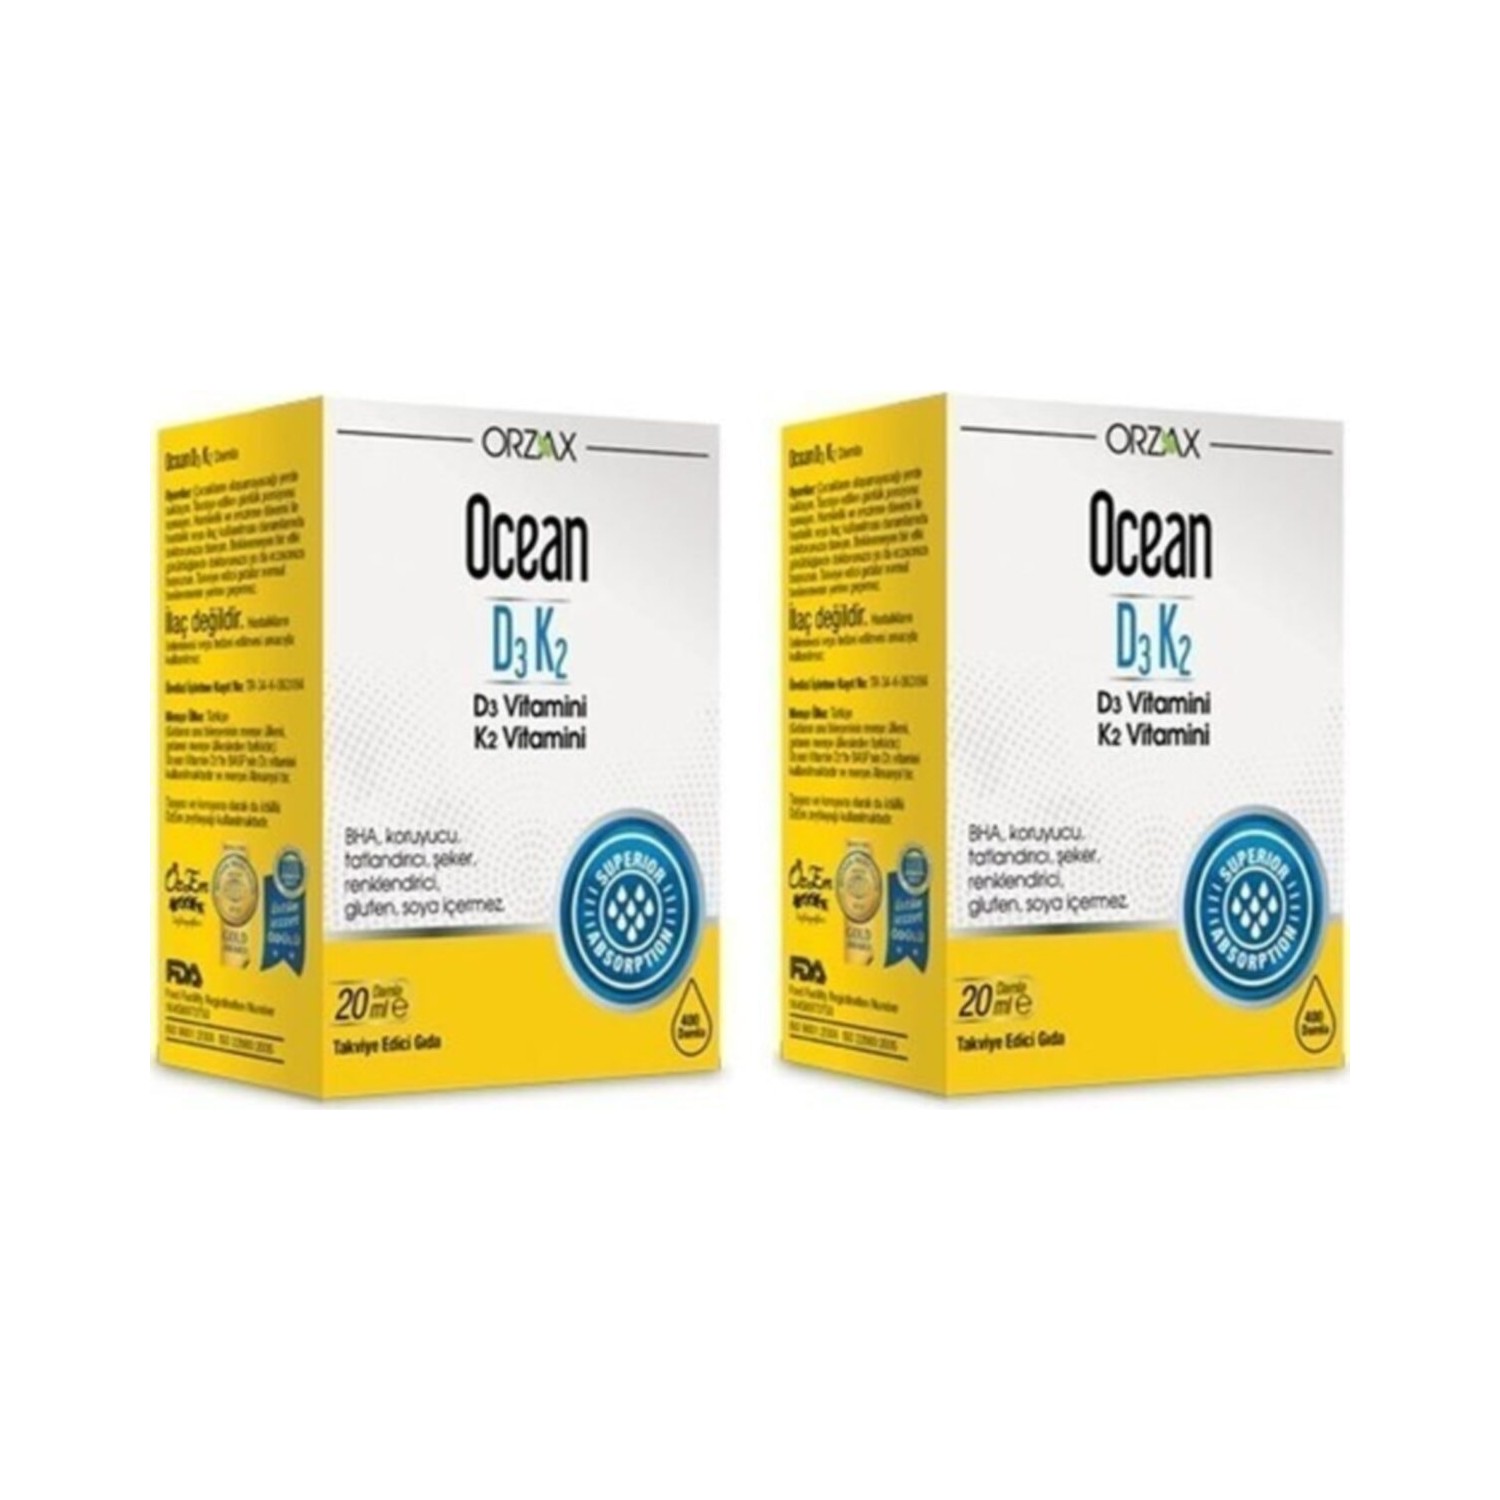 витаминные капли orzax ocean d3 k2 20 мл Витаминные капли Orzax Ocean D3 / K2, 2 флакона по 20 мл